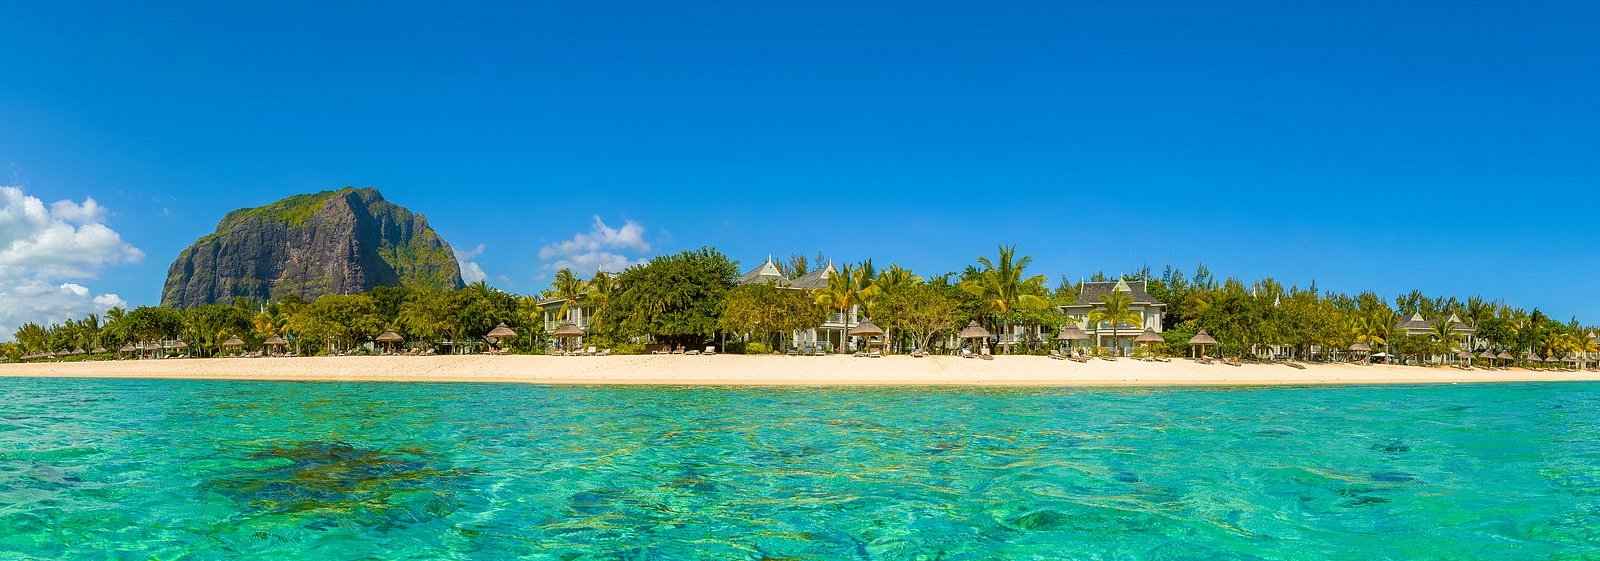 Tarif Hjemløs pakistanske THE 10 BEST Hotels in Mauritius for 2023 (from $31) - Tripadvisor